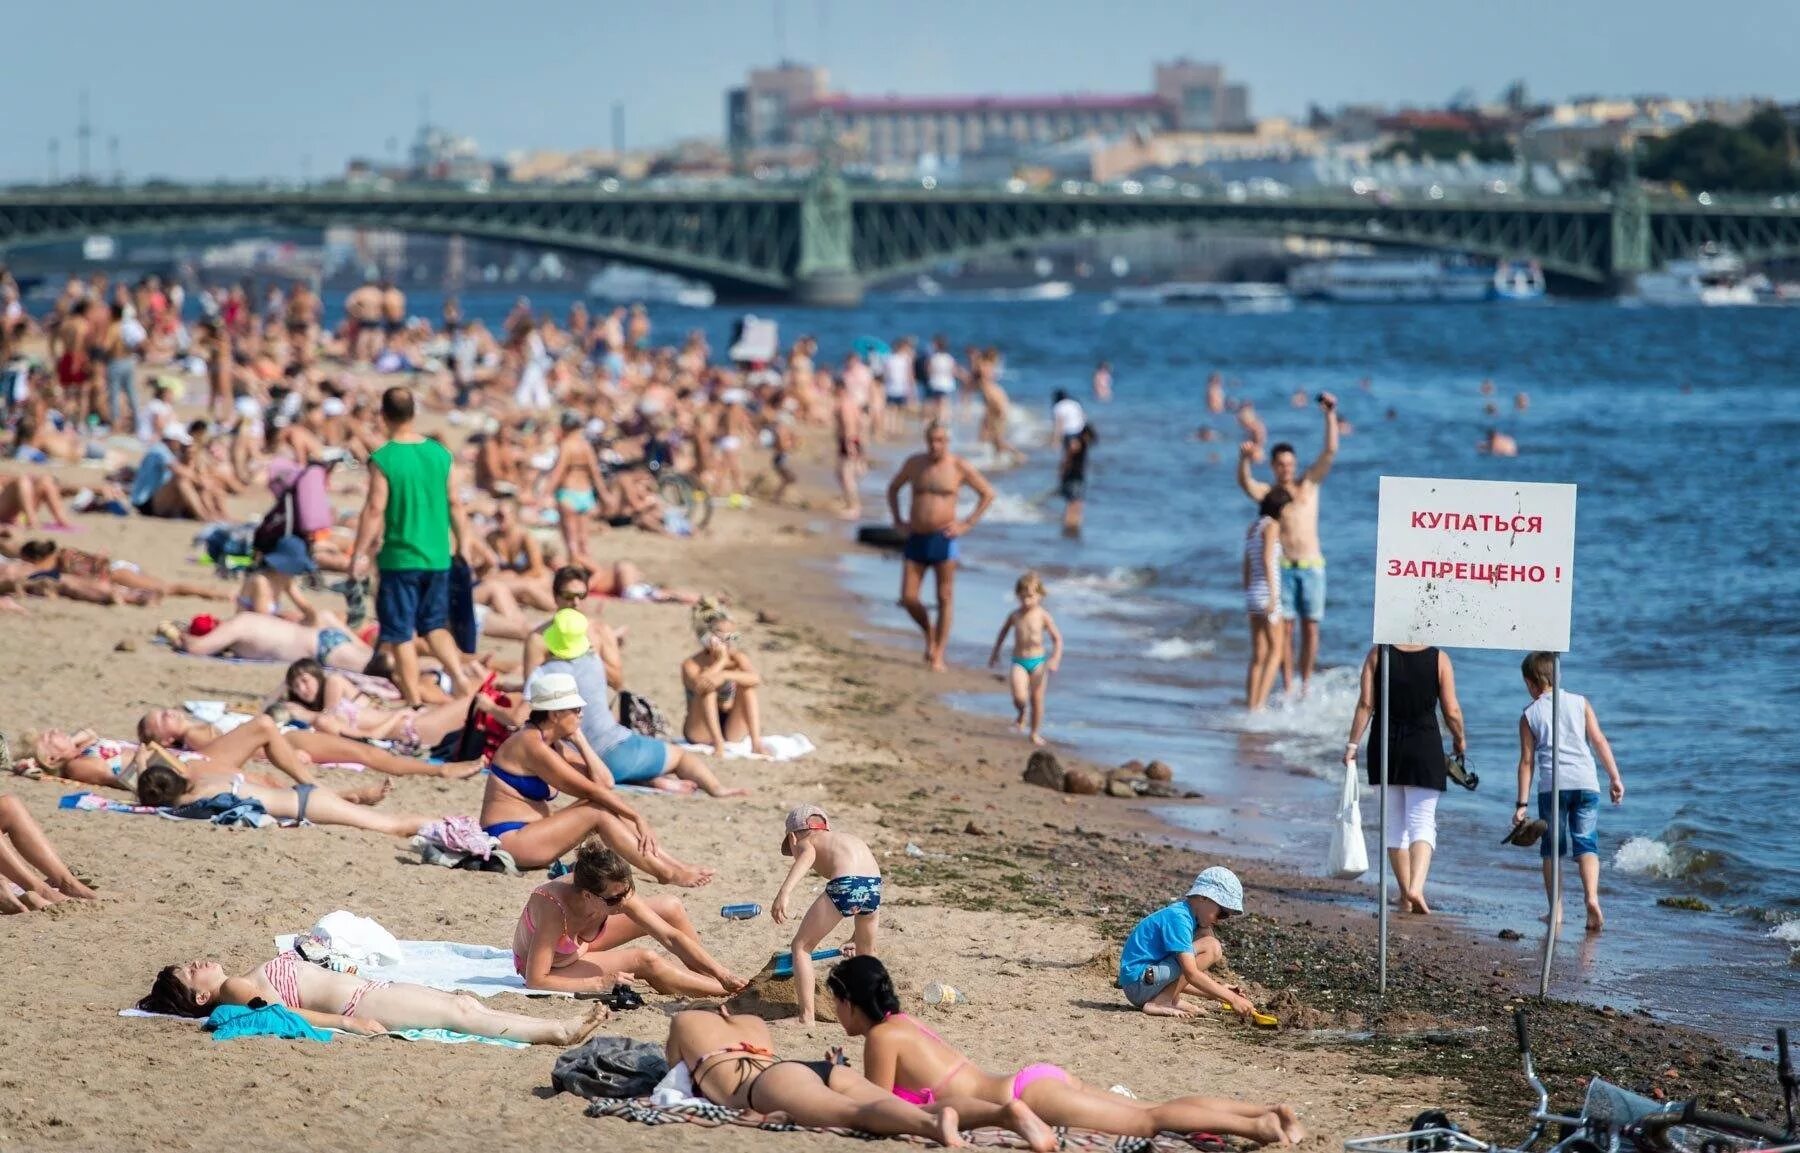 Люди на пляже. Пляж с отдыхающими. Пляж Санкт-Петербург. Переполненные пляжи. Смочь купаться